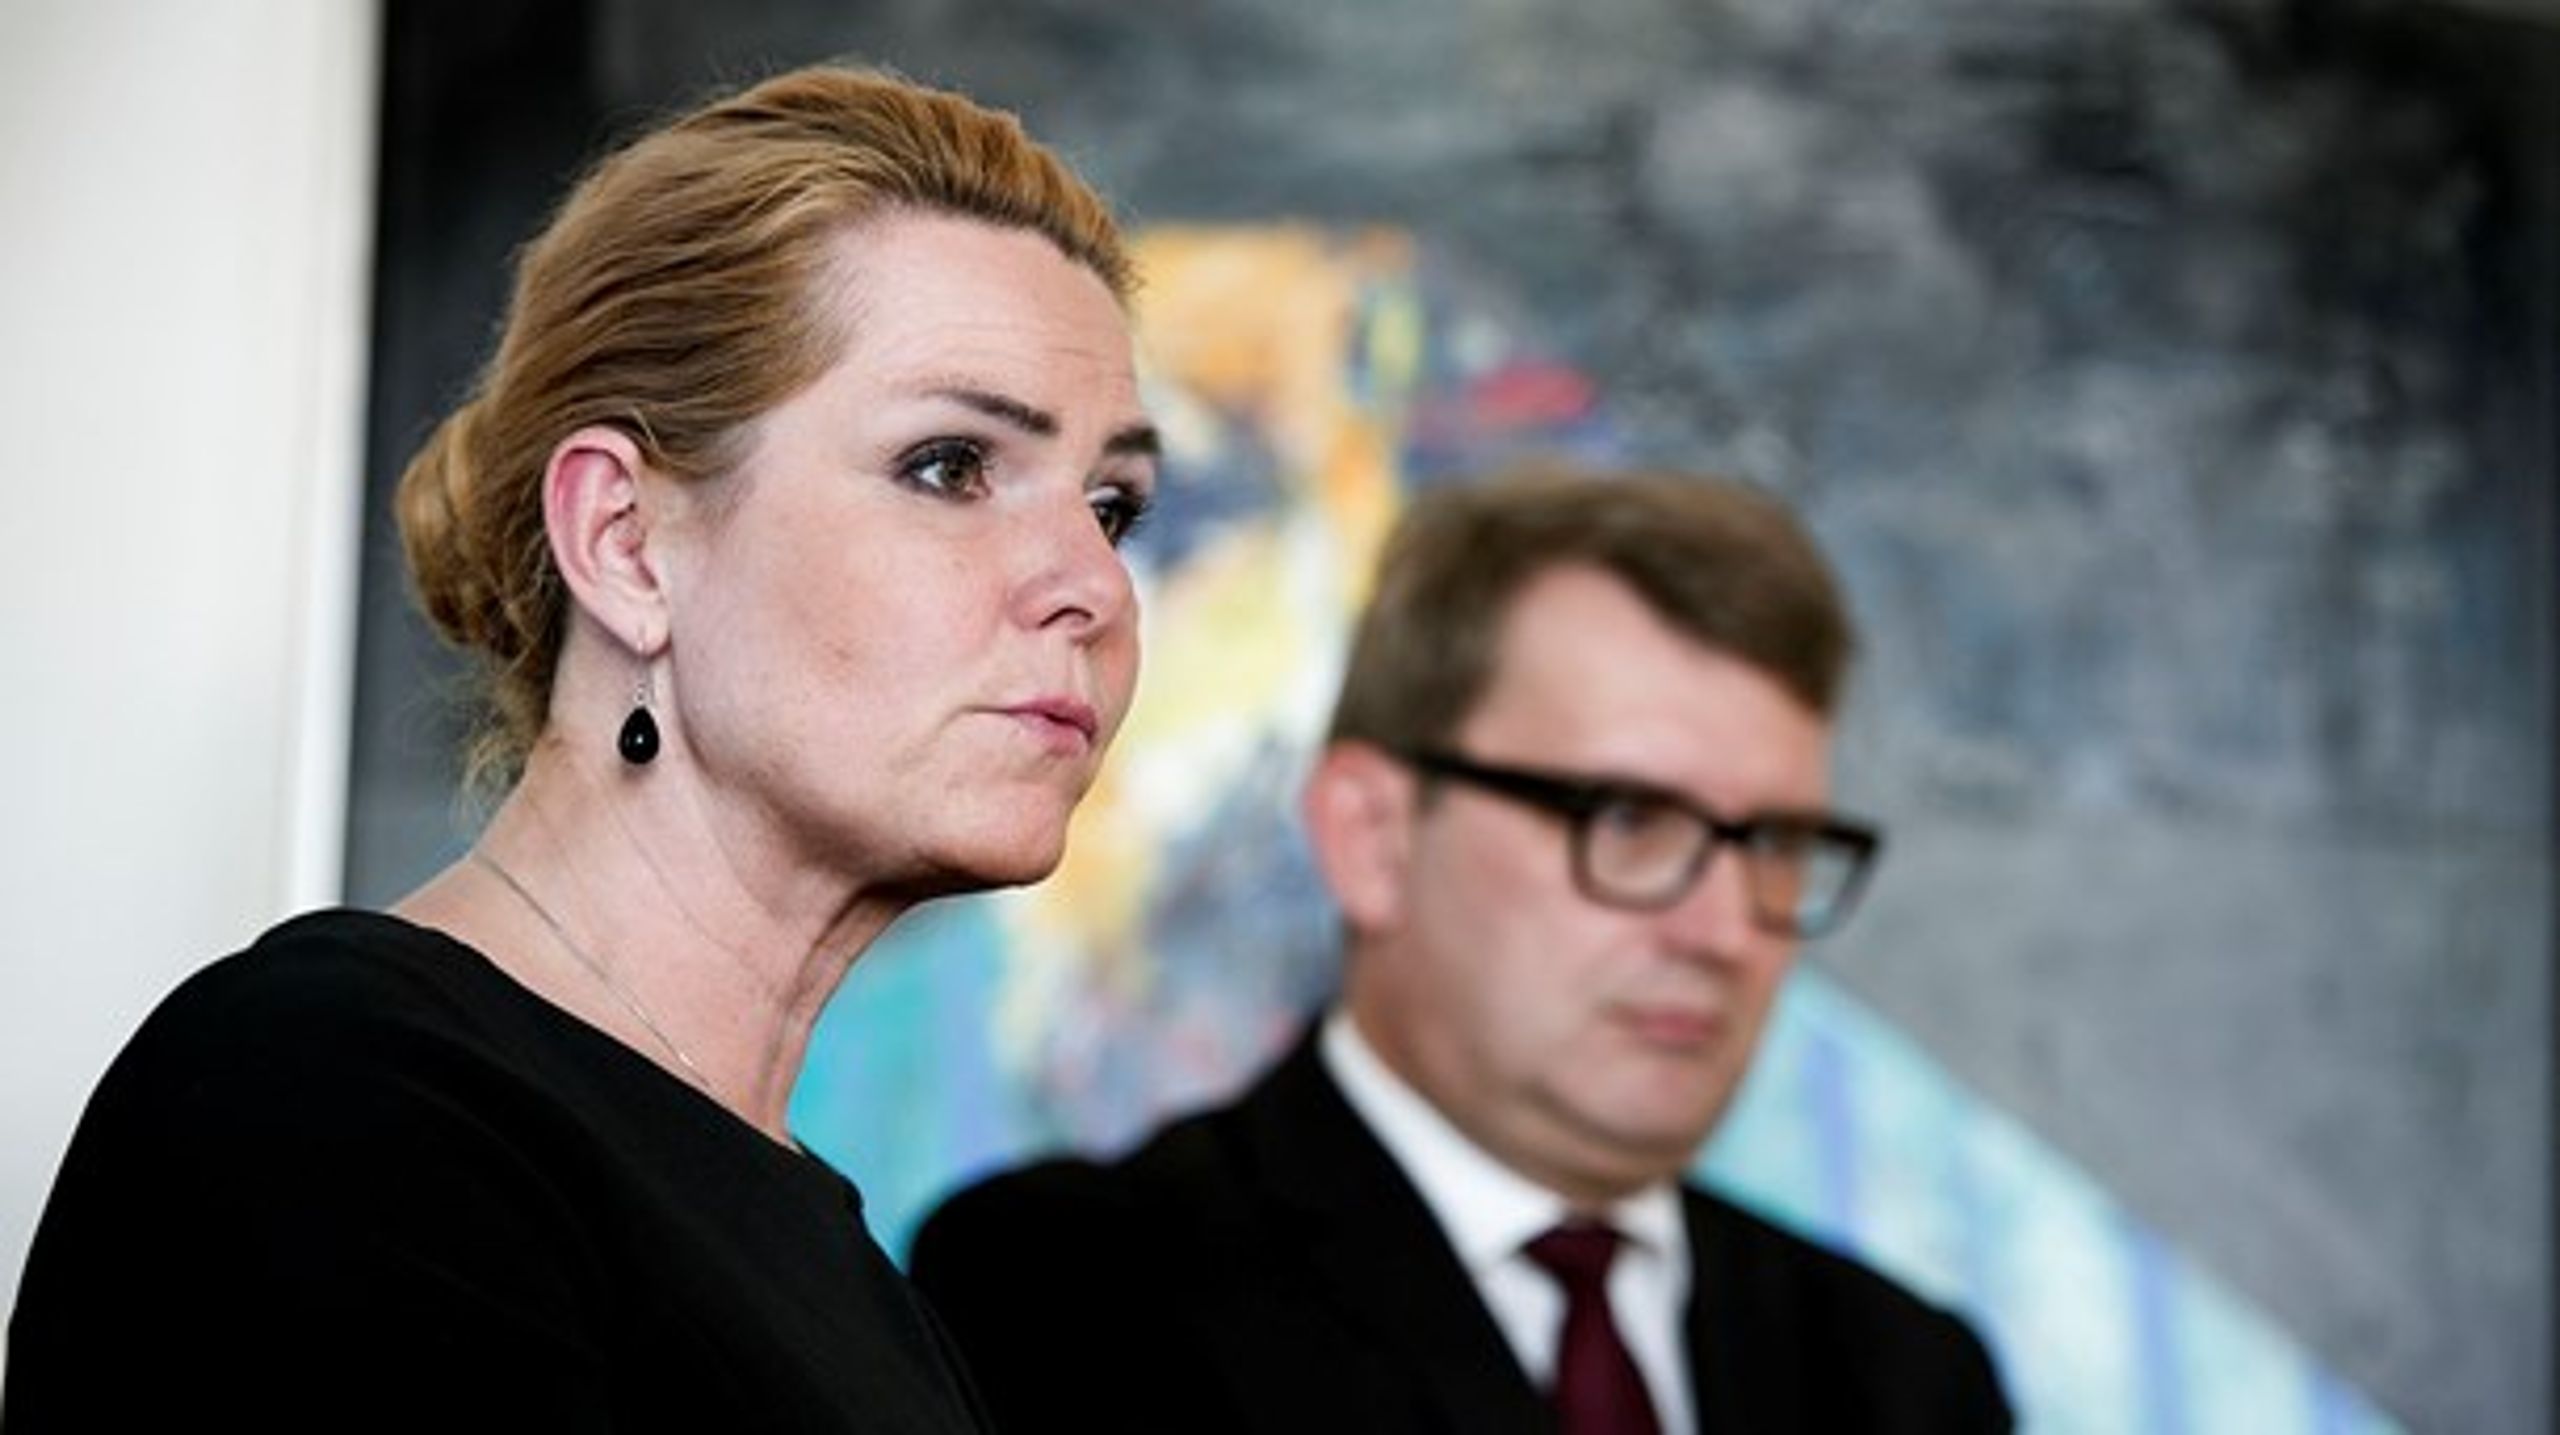 Udlændinge- og integrationsminister Inger Støjberg (V) præsenterede onsdag sammen med beskæftigelsesminister Troels Lund Poulsen (V) et udspil, der skal gøre det nemmere at rekruttere udenlandsk arbejdskraft.